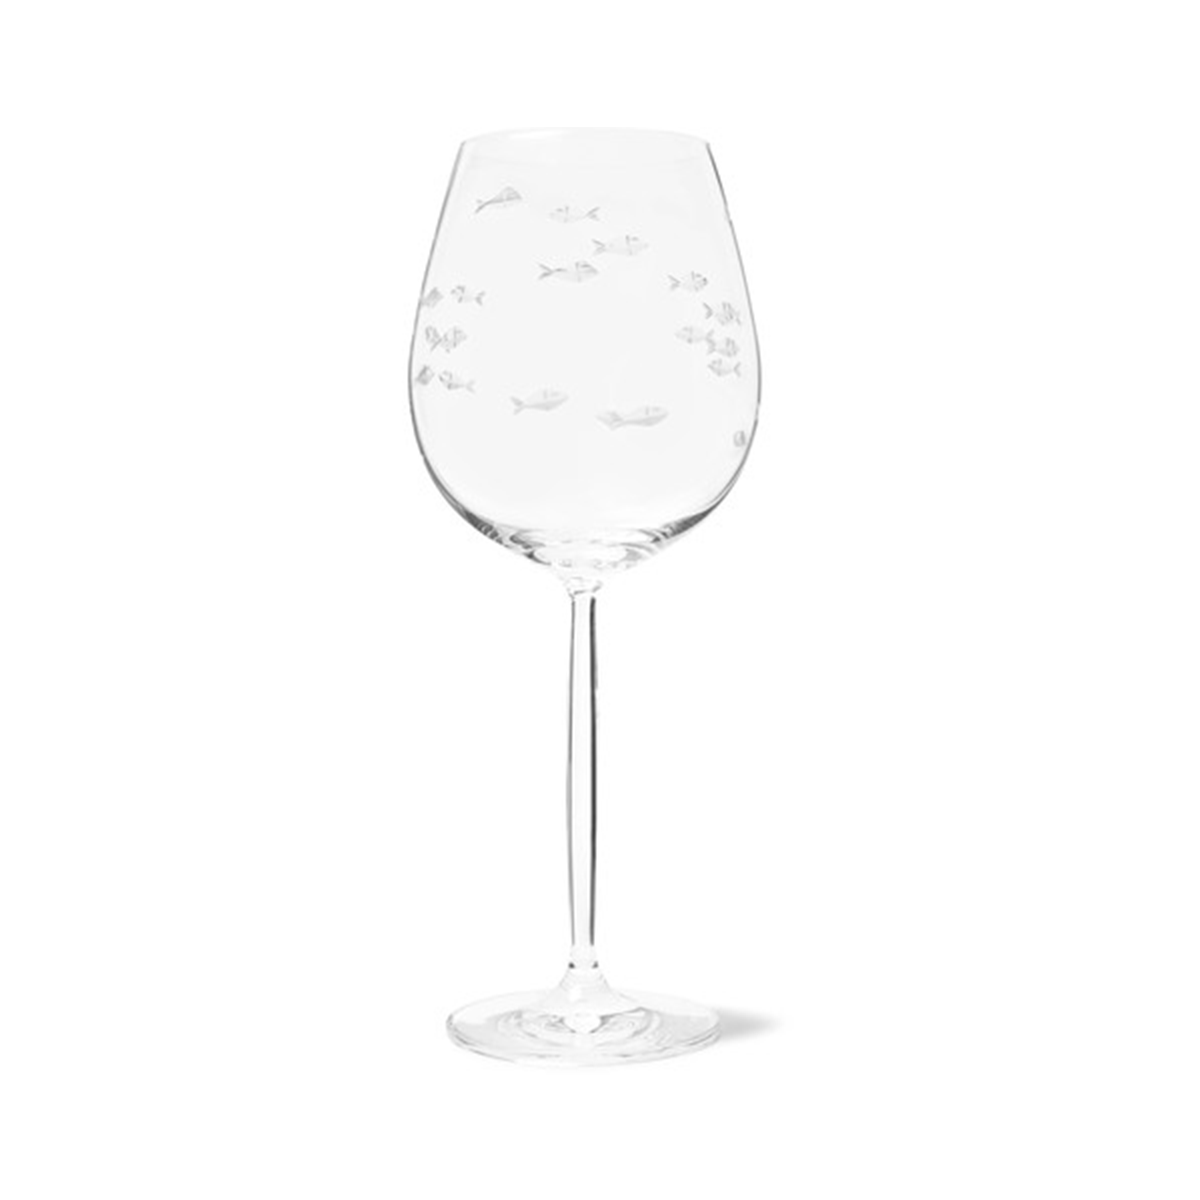 Trafalgar Martini Glass